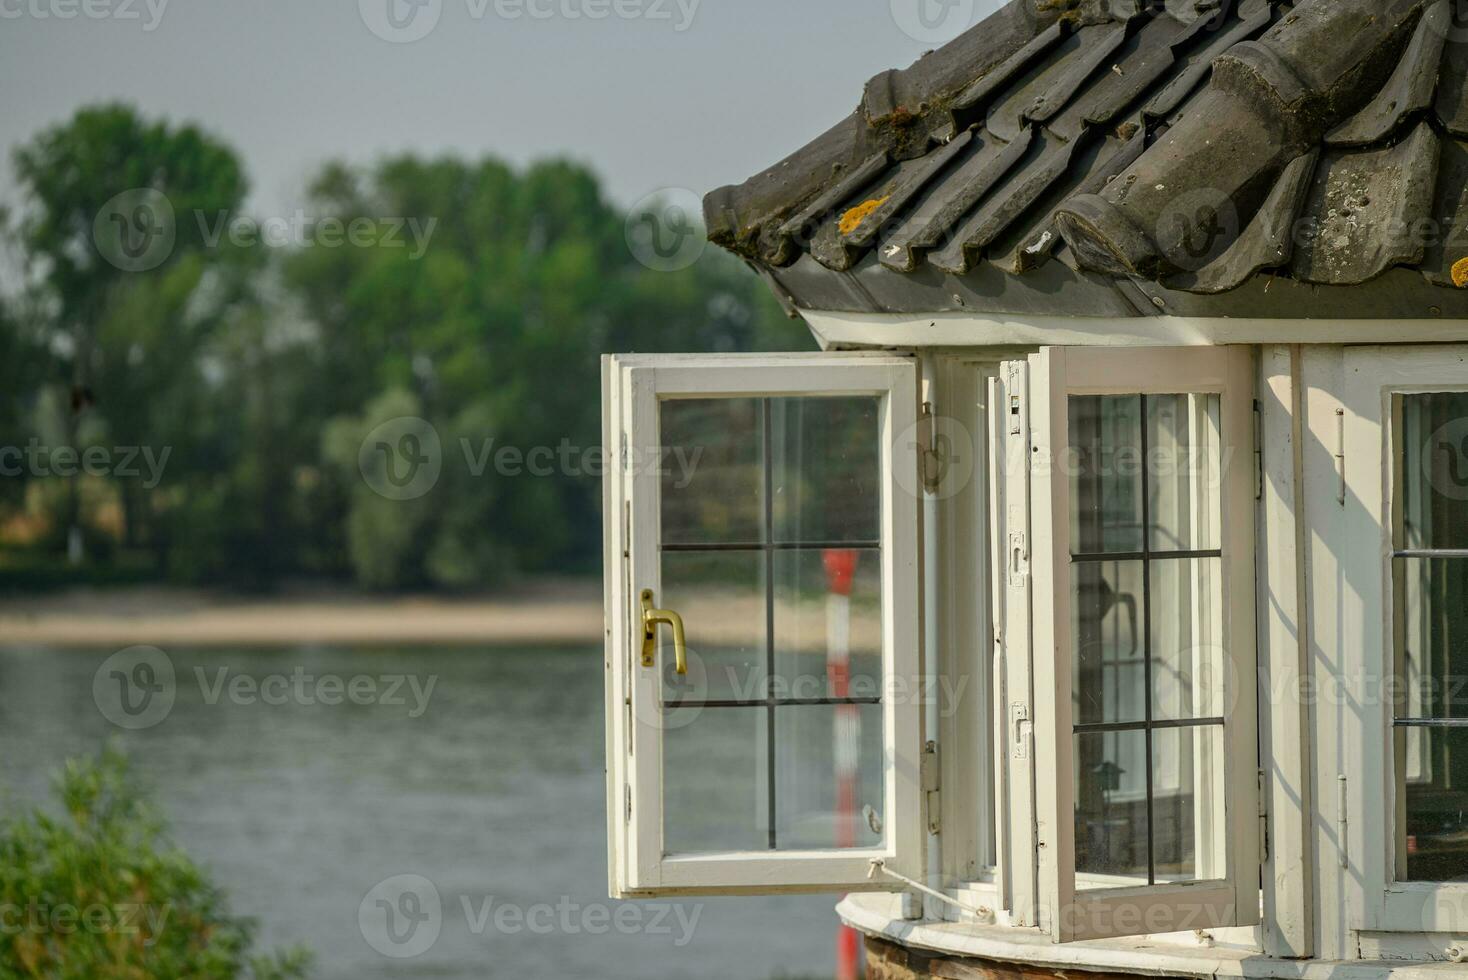 cañas en el río Rin foto